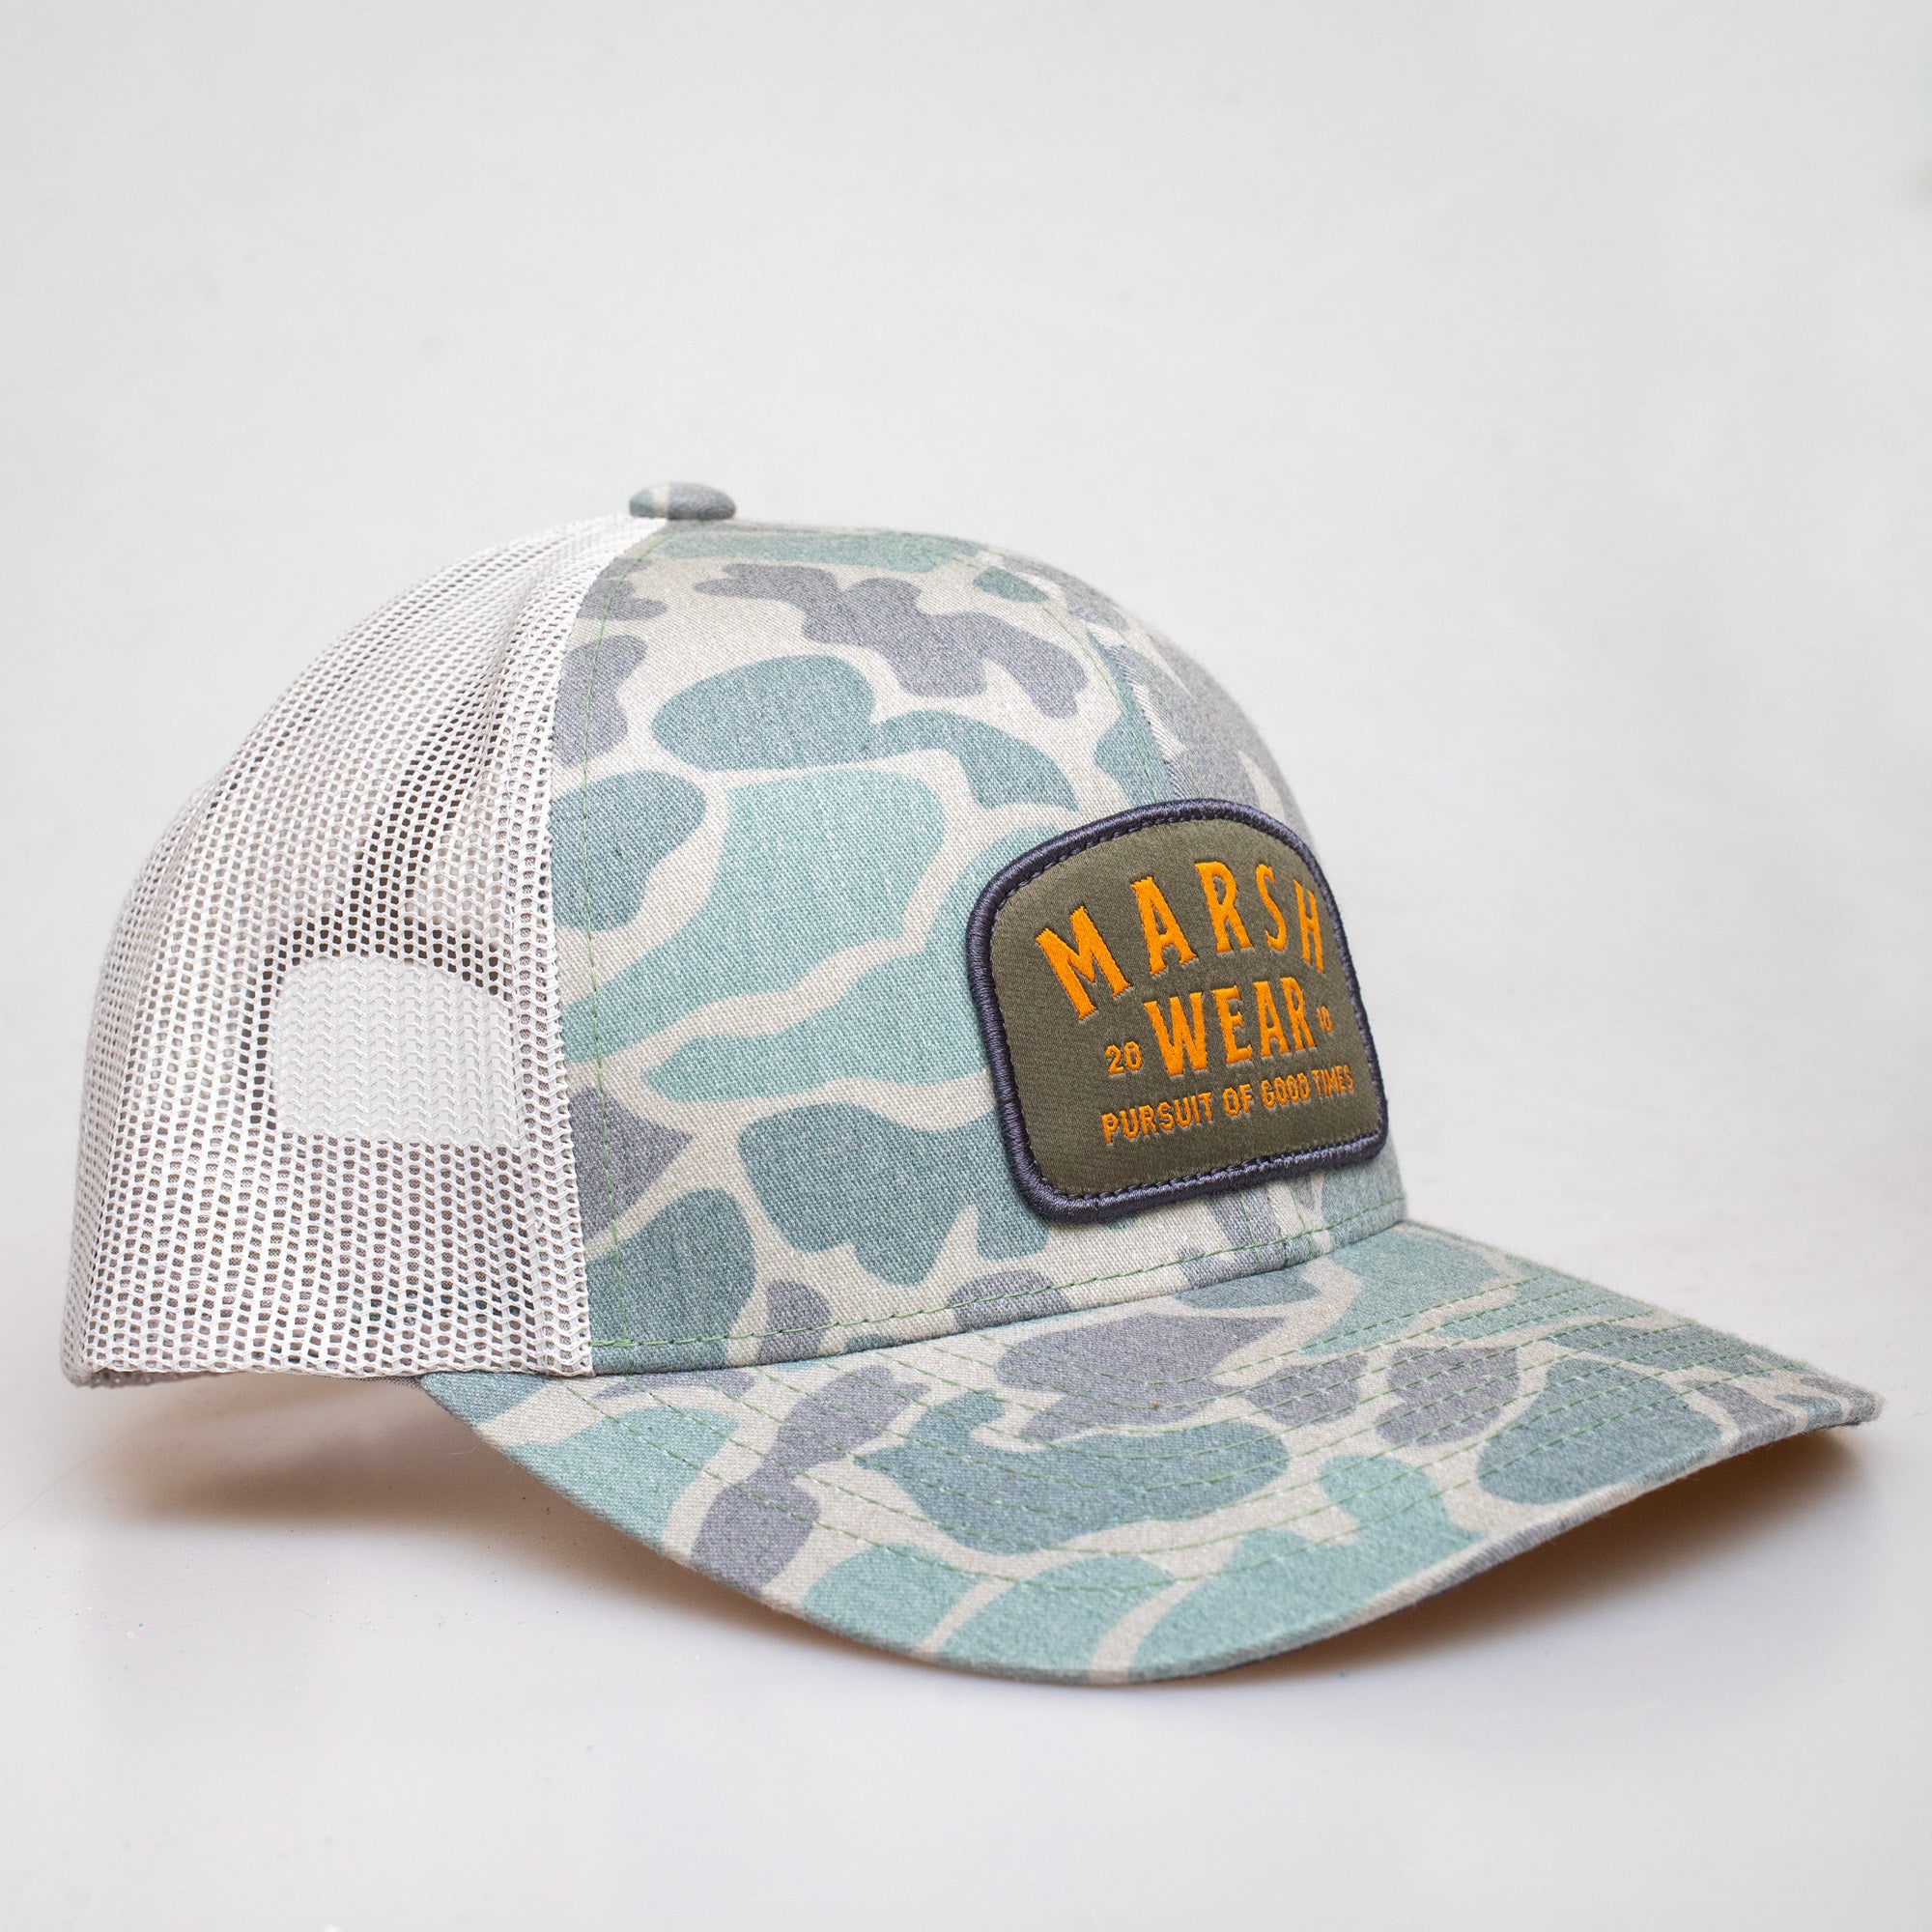 Marsh Wear Alton Camo Men's Trucker Hat